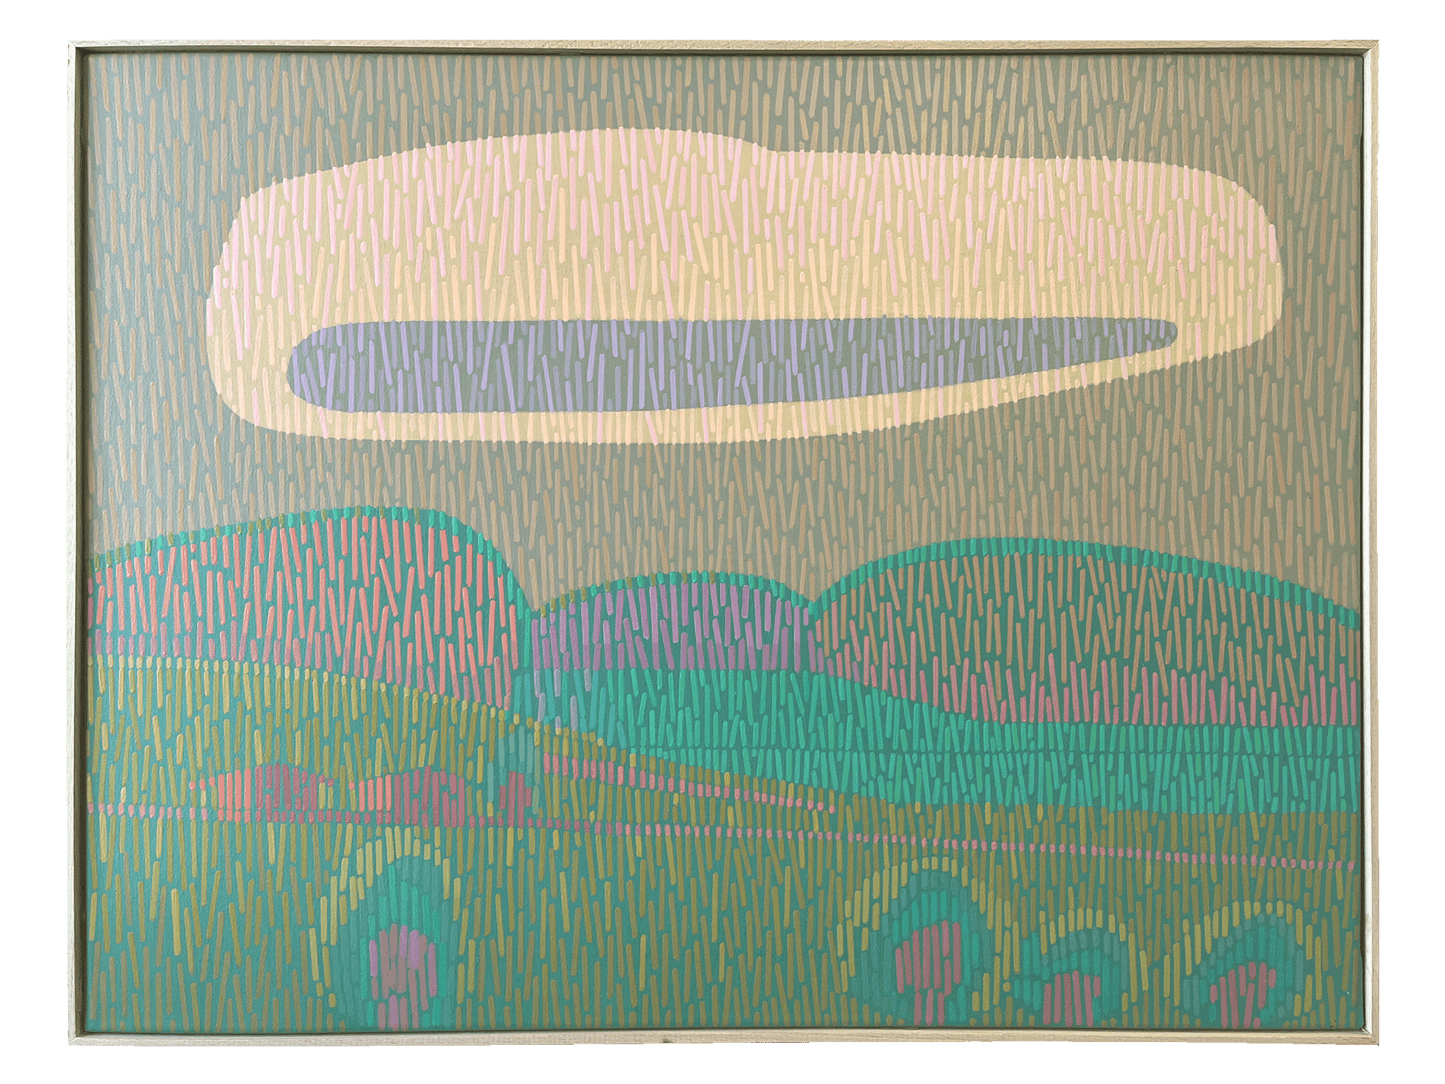 Landscape Complementary 4, unique, painting, hand-painted unique piece, 68 x 52 cm, with frame strip